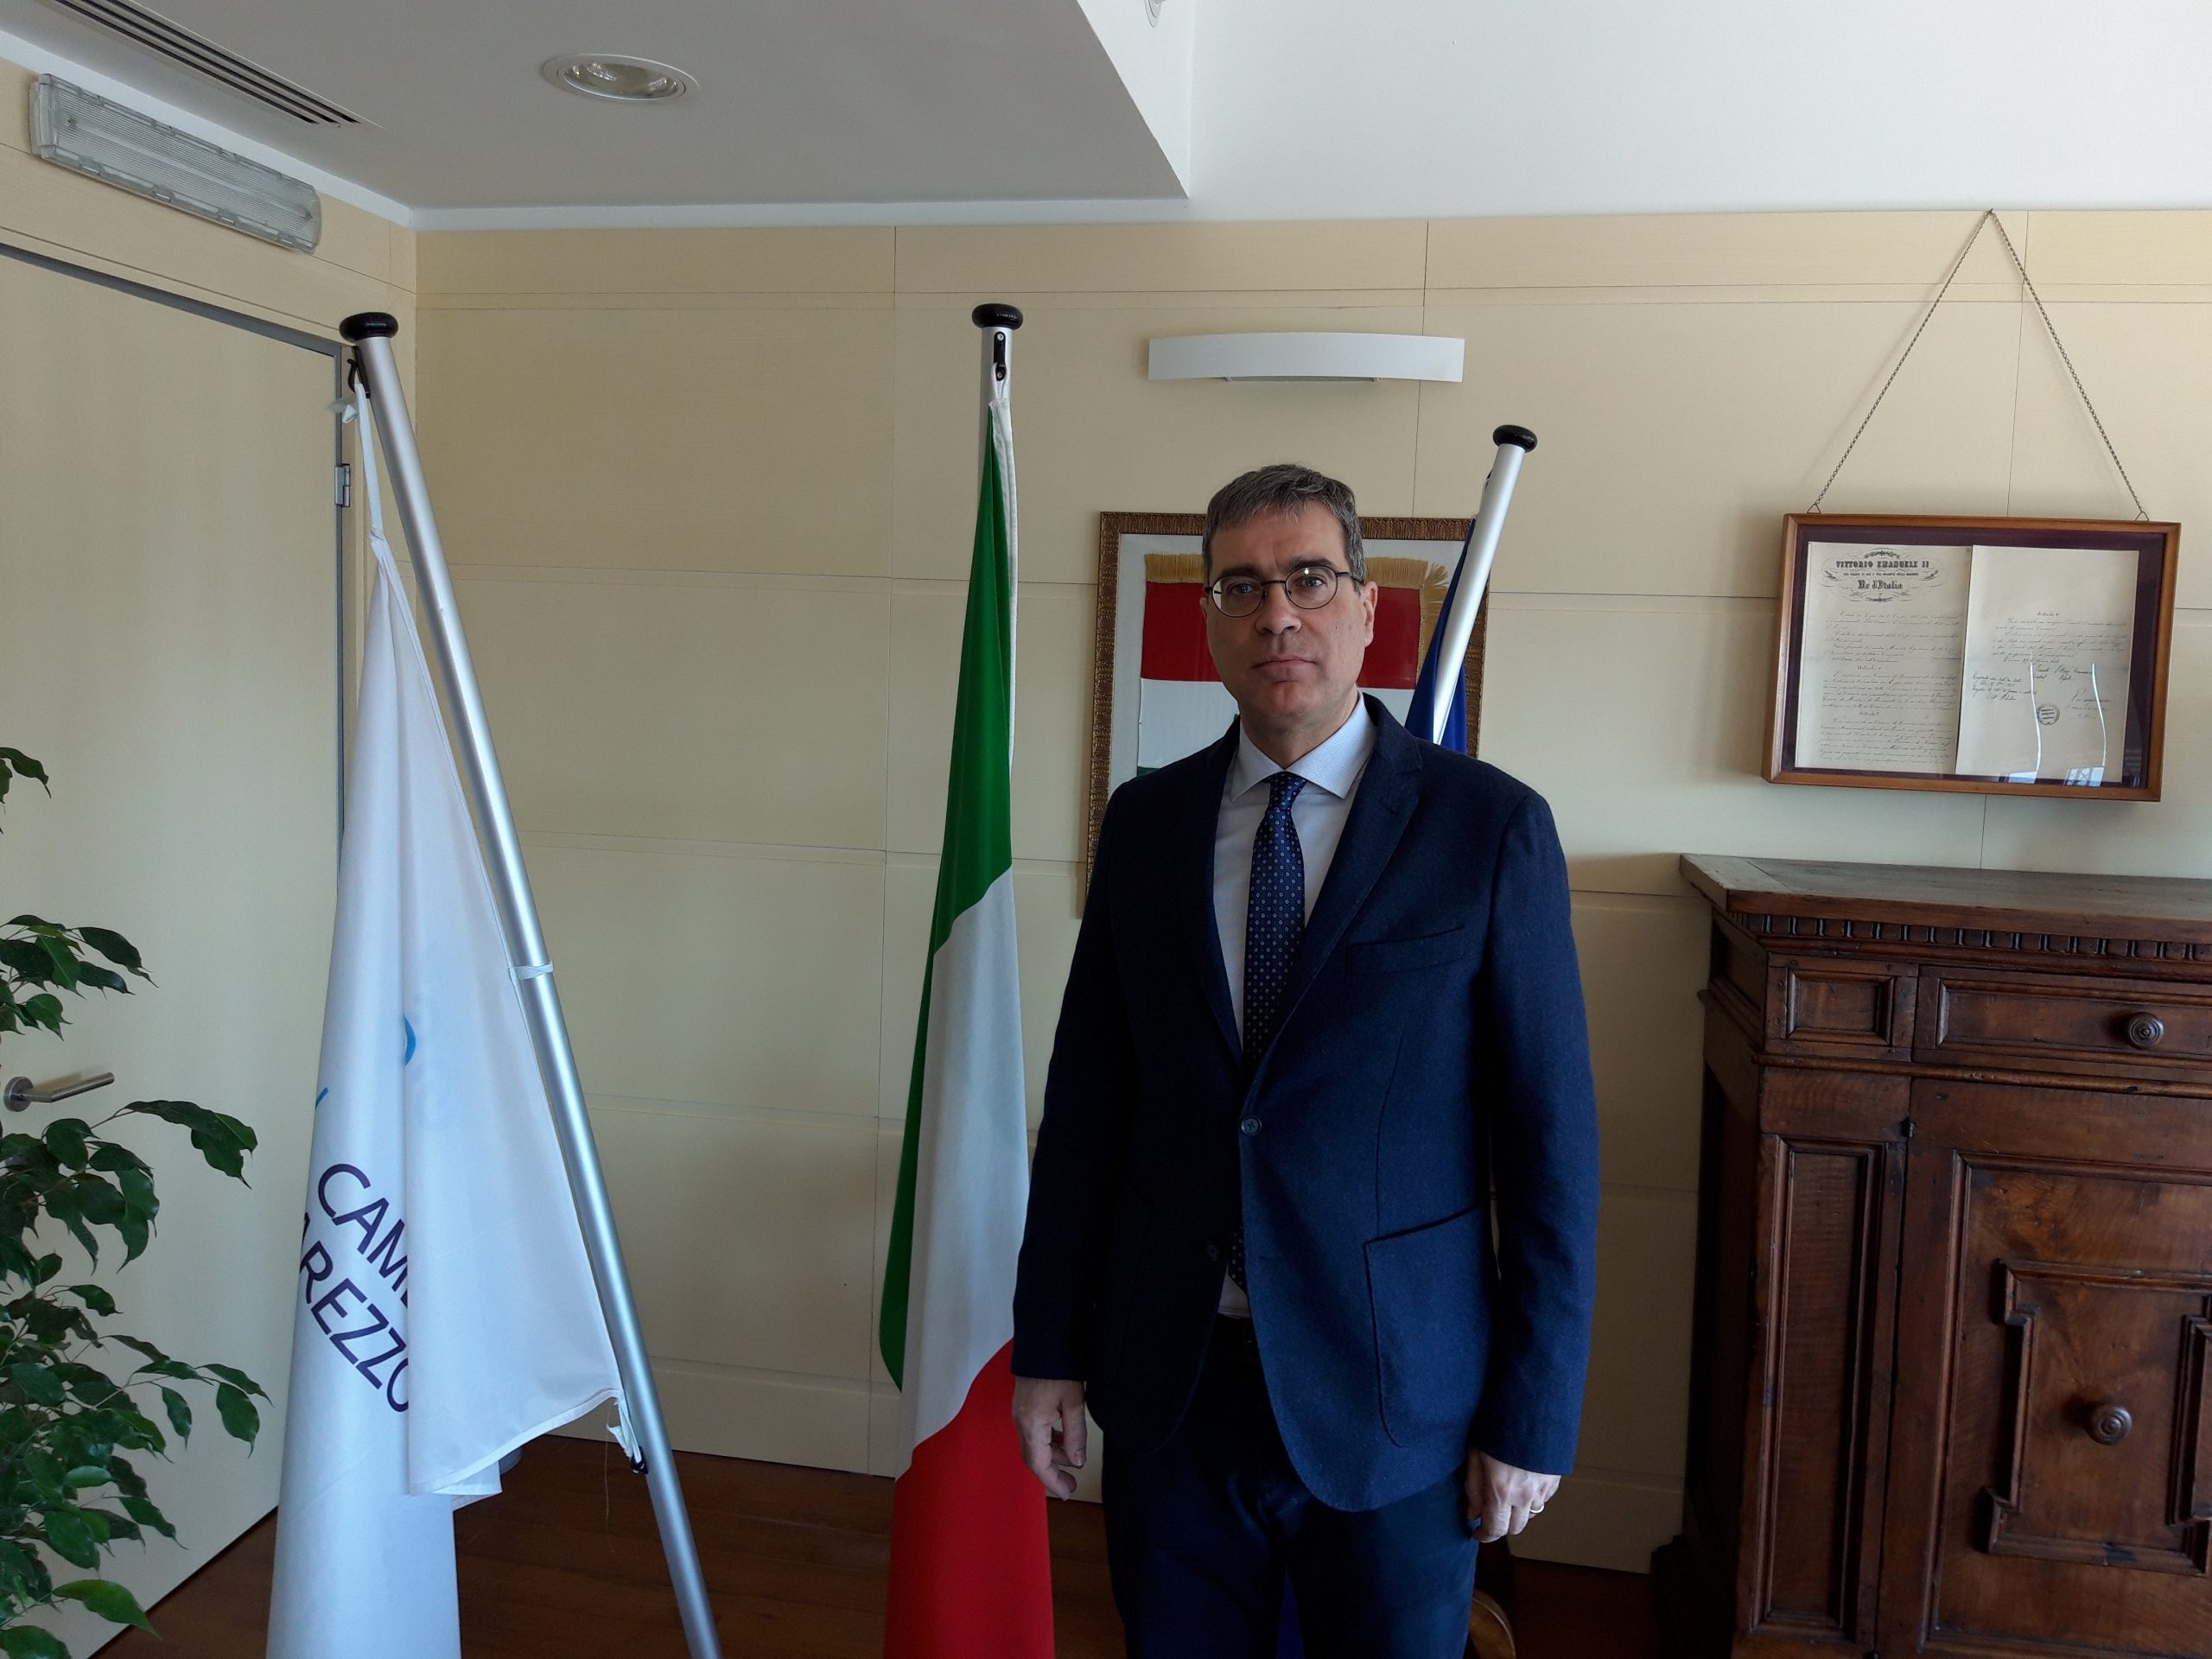 Marco Randellini è il nuovo segretario generale, facente funzione, della Camera di Commercio